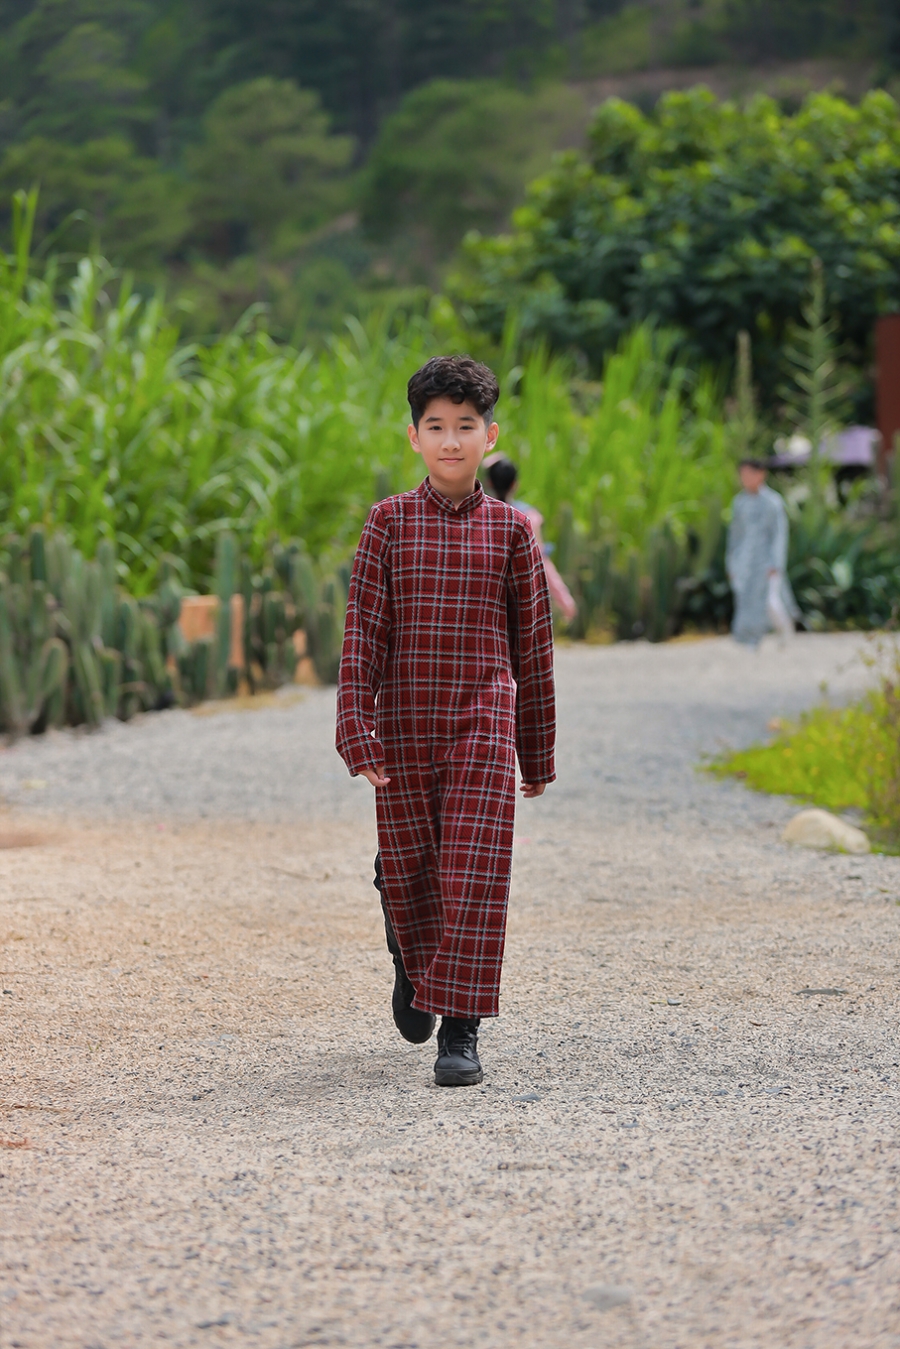 Không chỉ bé gái, bé trai cũng có trang phục áo dài vải tweed của riêng mình.